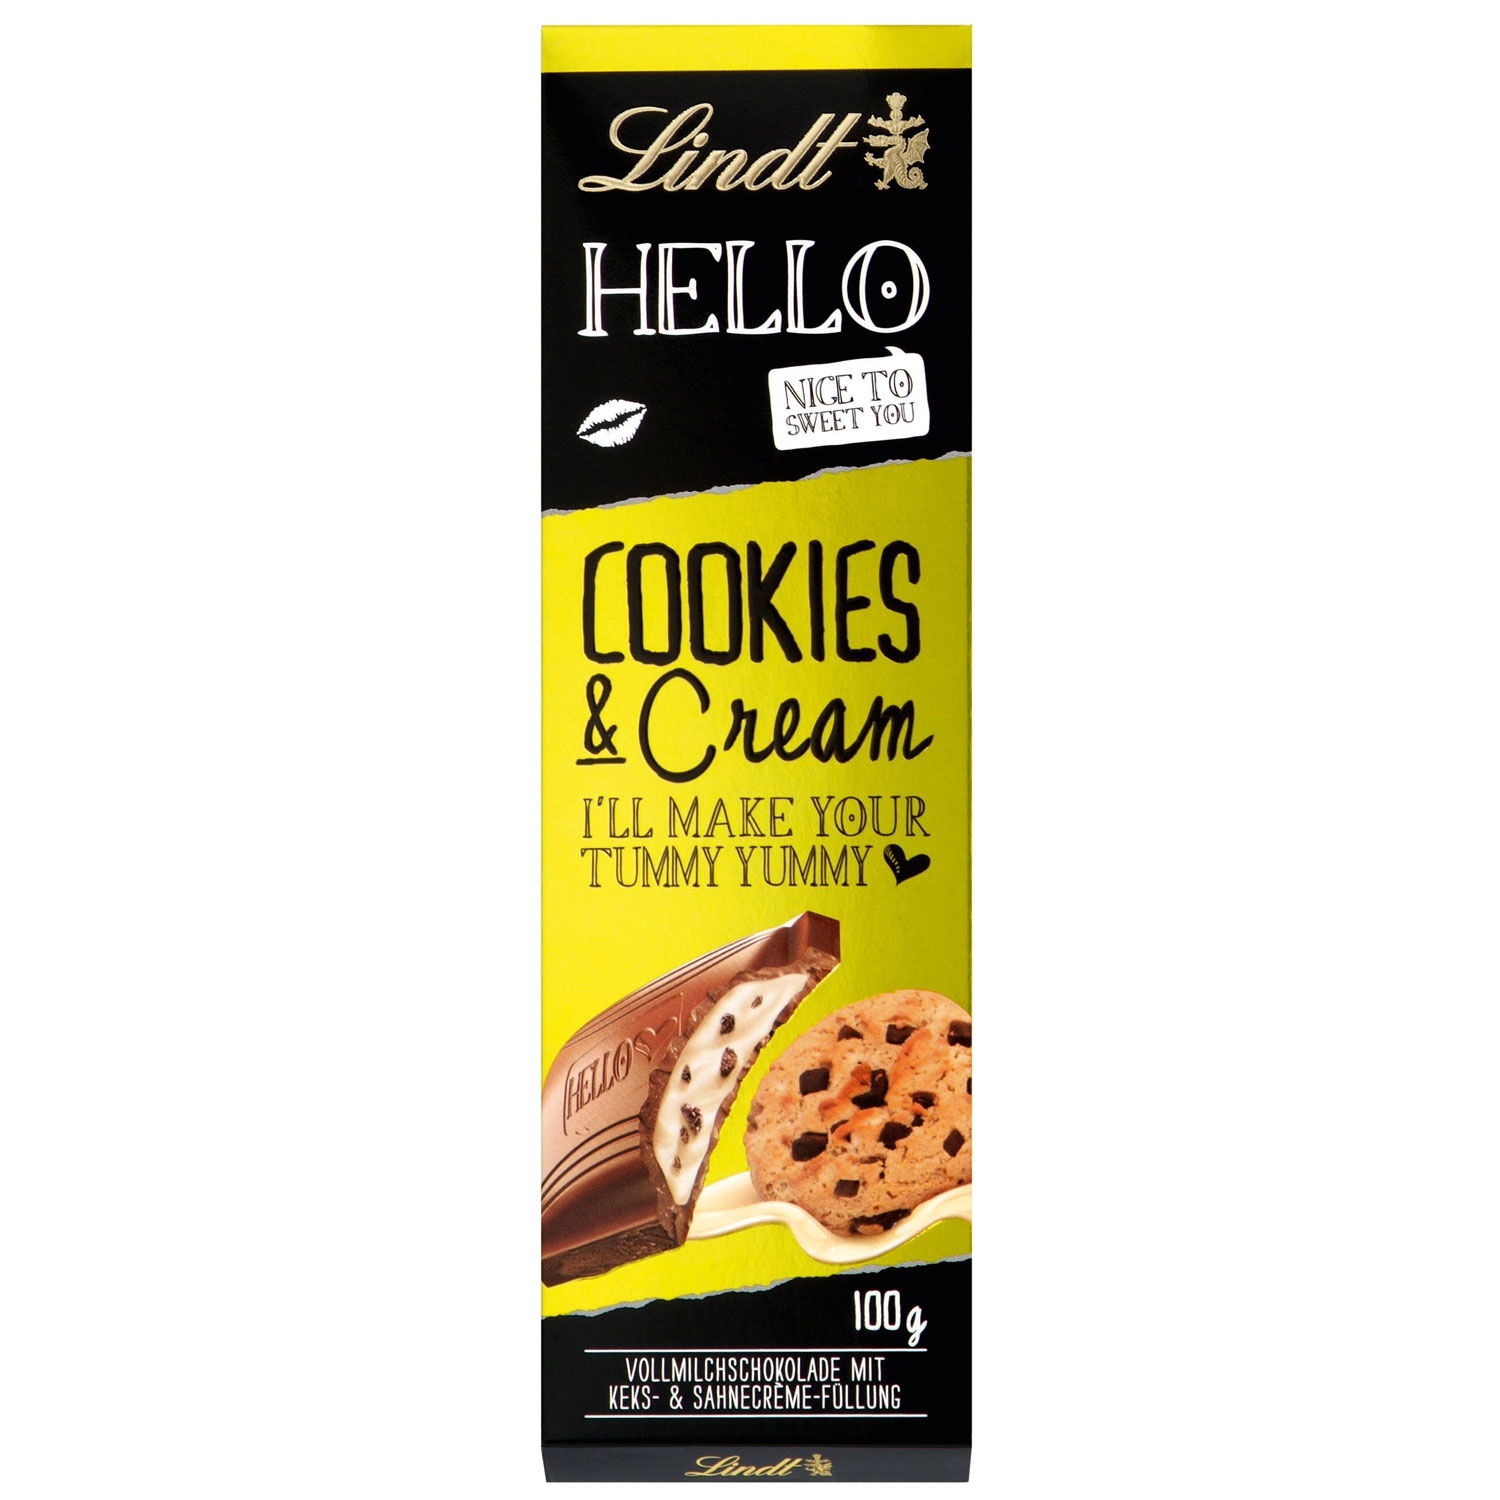 Lindt Hello Cookies & Cream Tafel 100g.